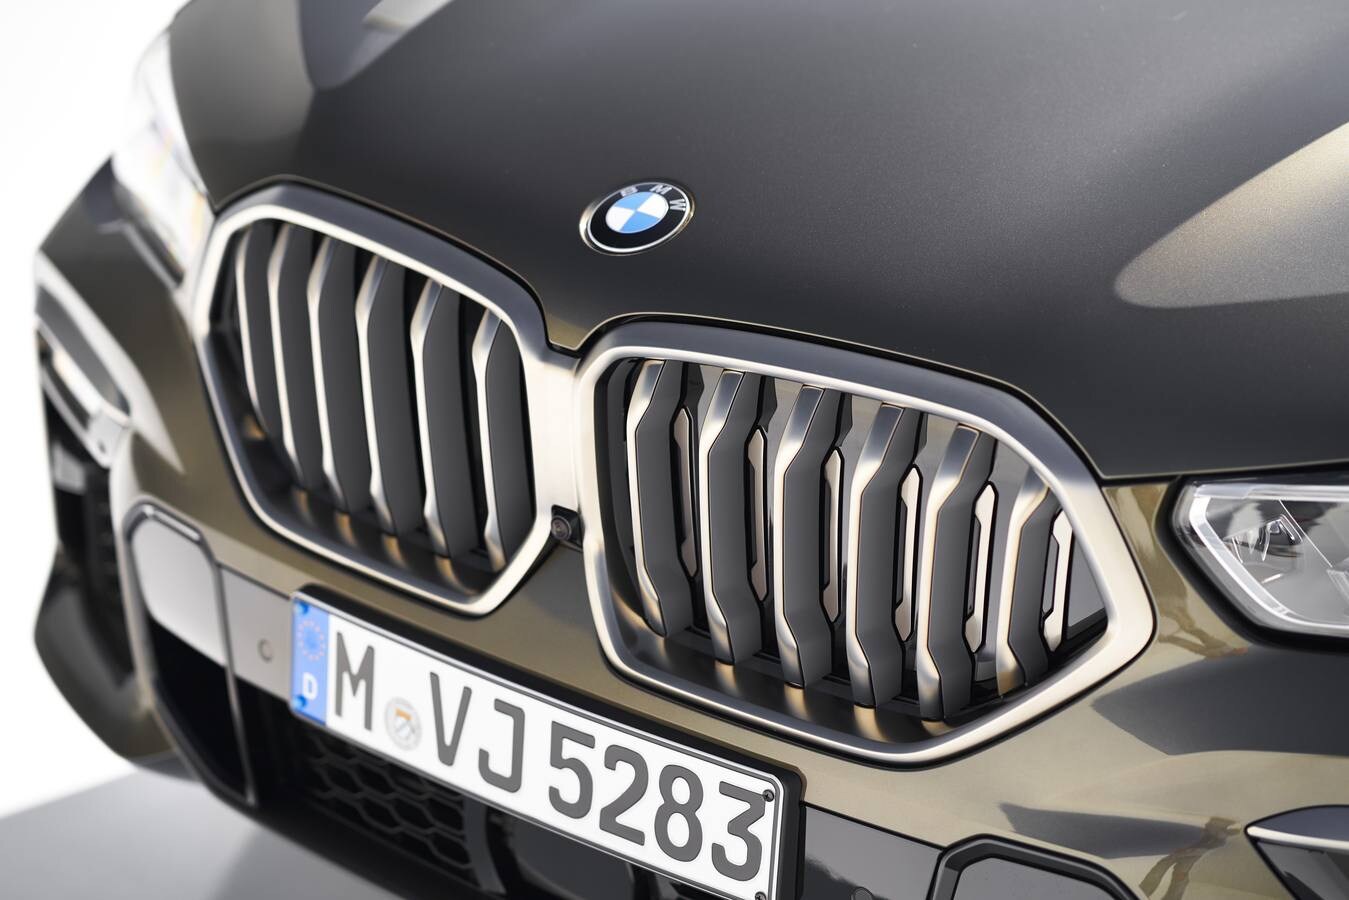 Fotos: BMW X6, la exclusiva tercera generación en imágenes